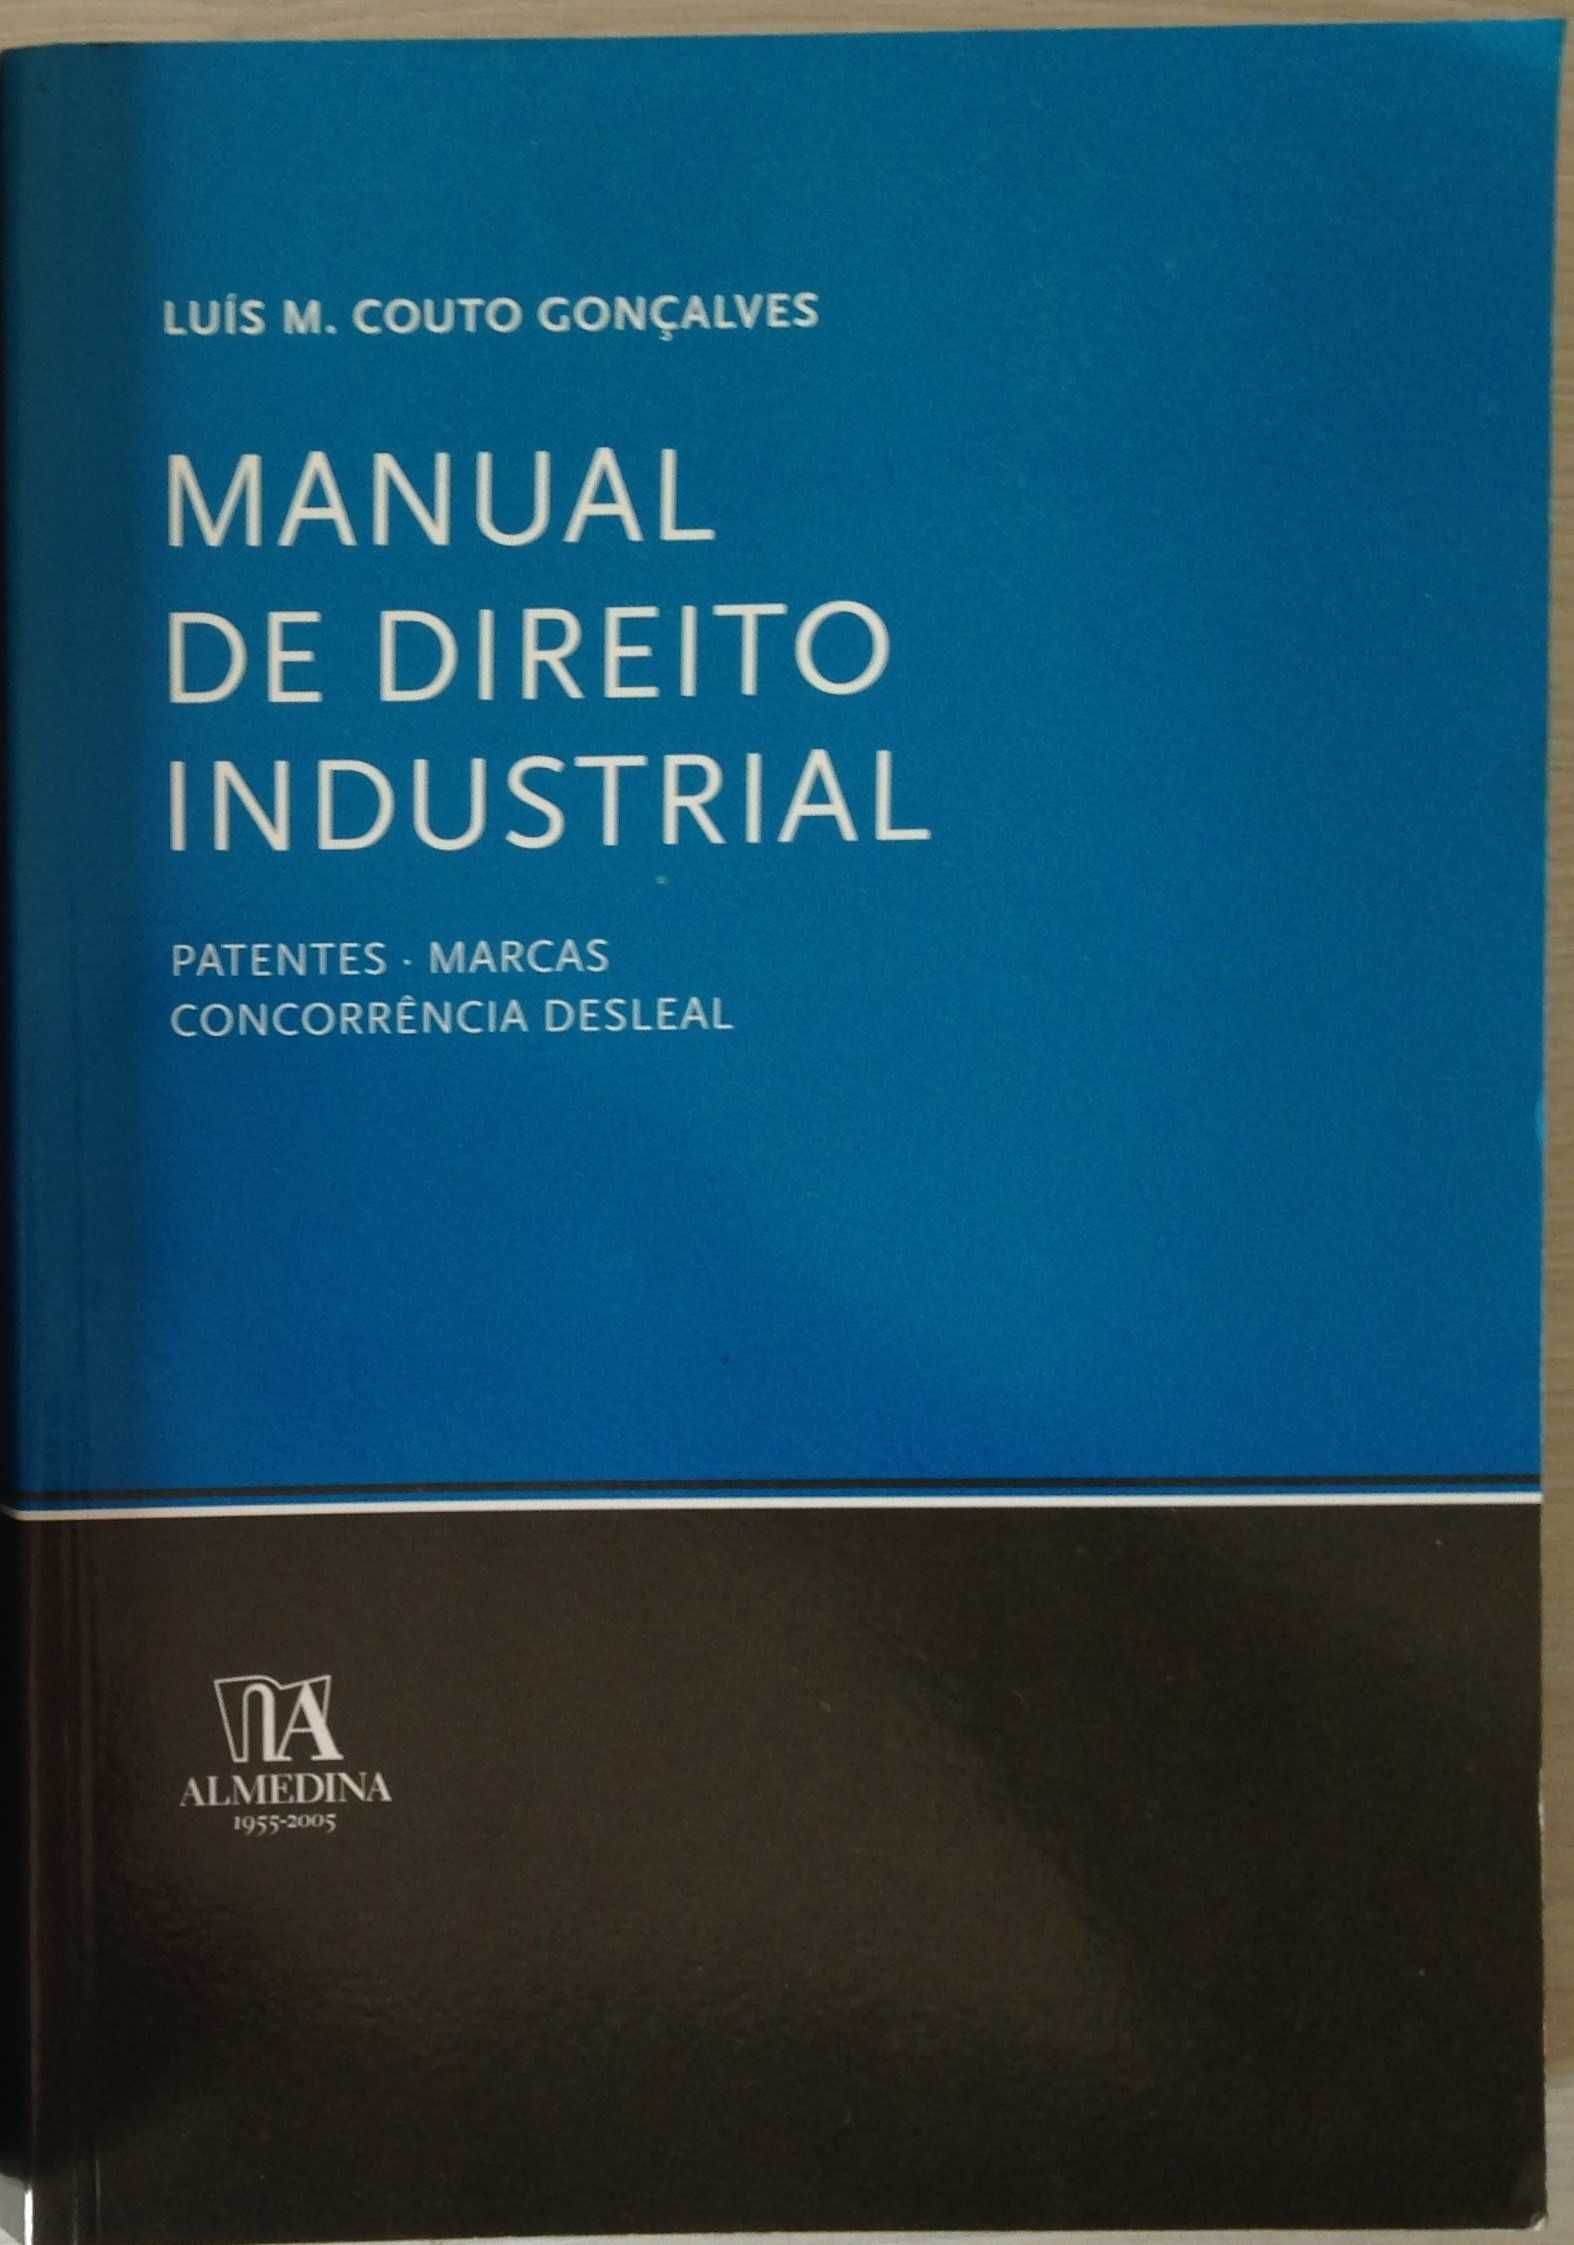 Manual de Direito Industrial